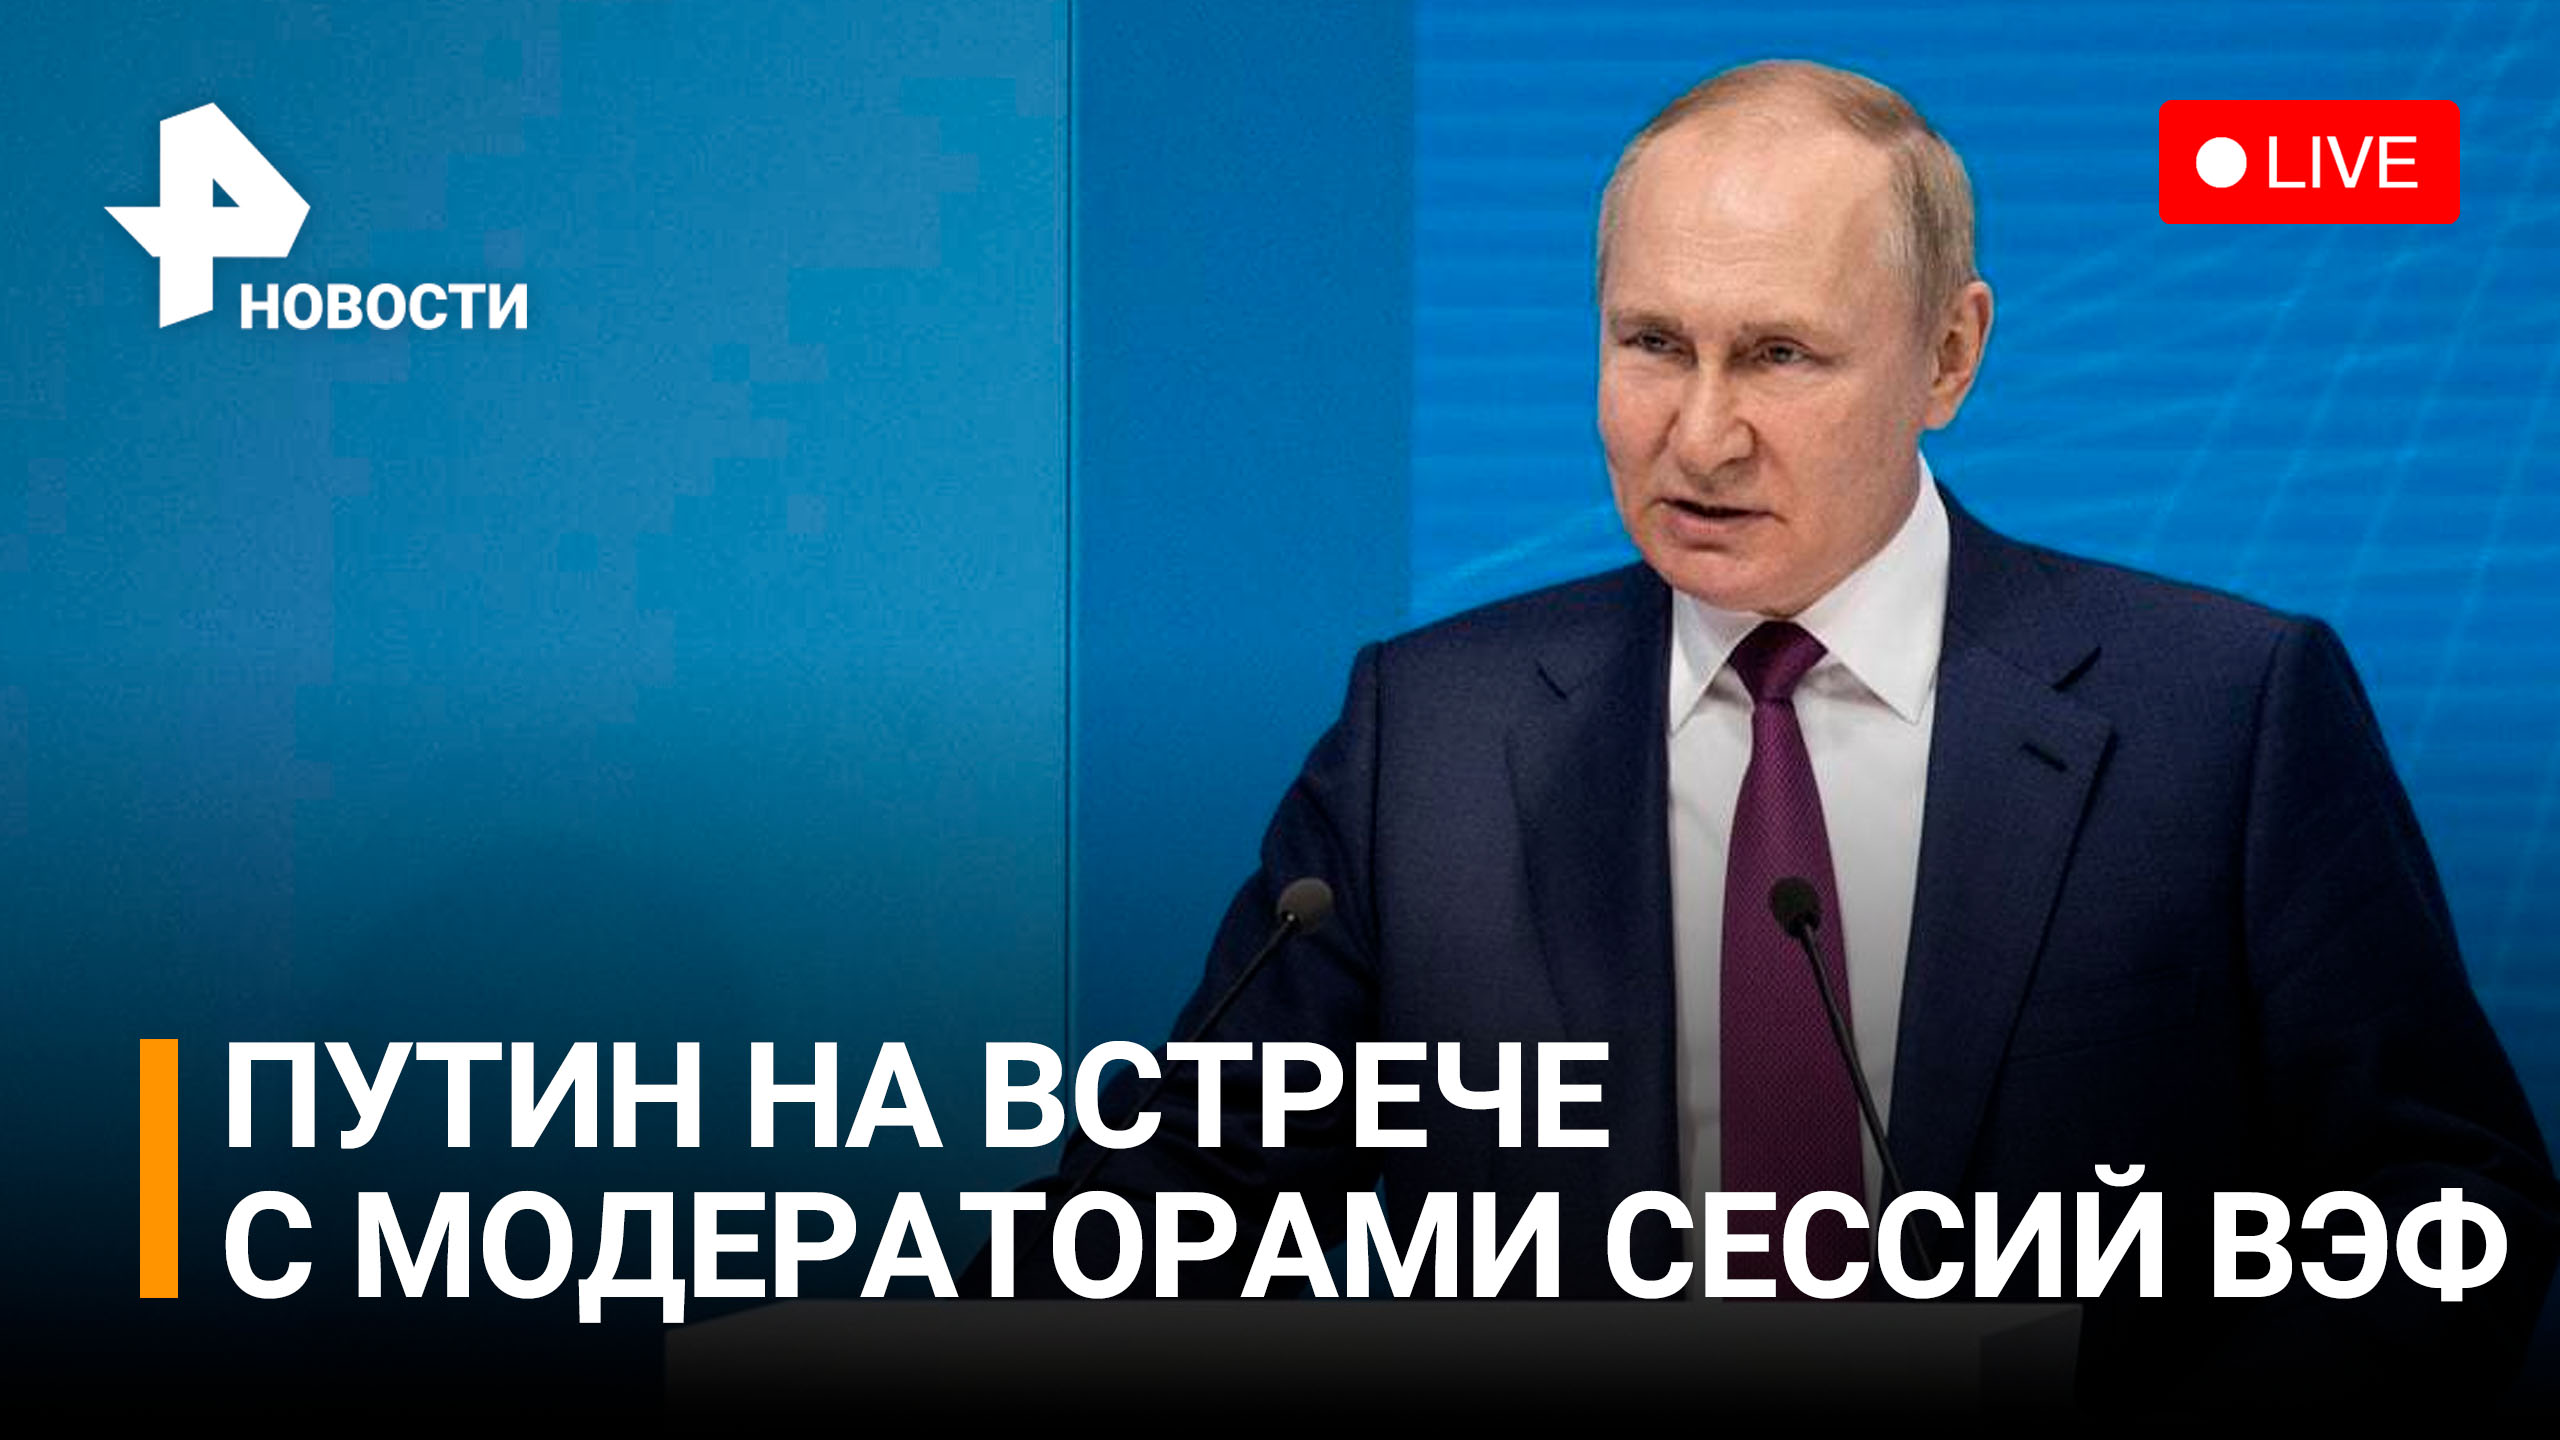 Владимир Путин на встрече с модераторами ключевых сессий ВЭФ-2022. Прямая трансляция